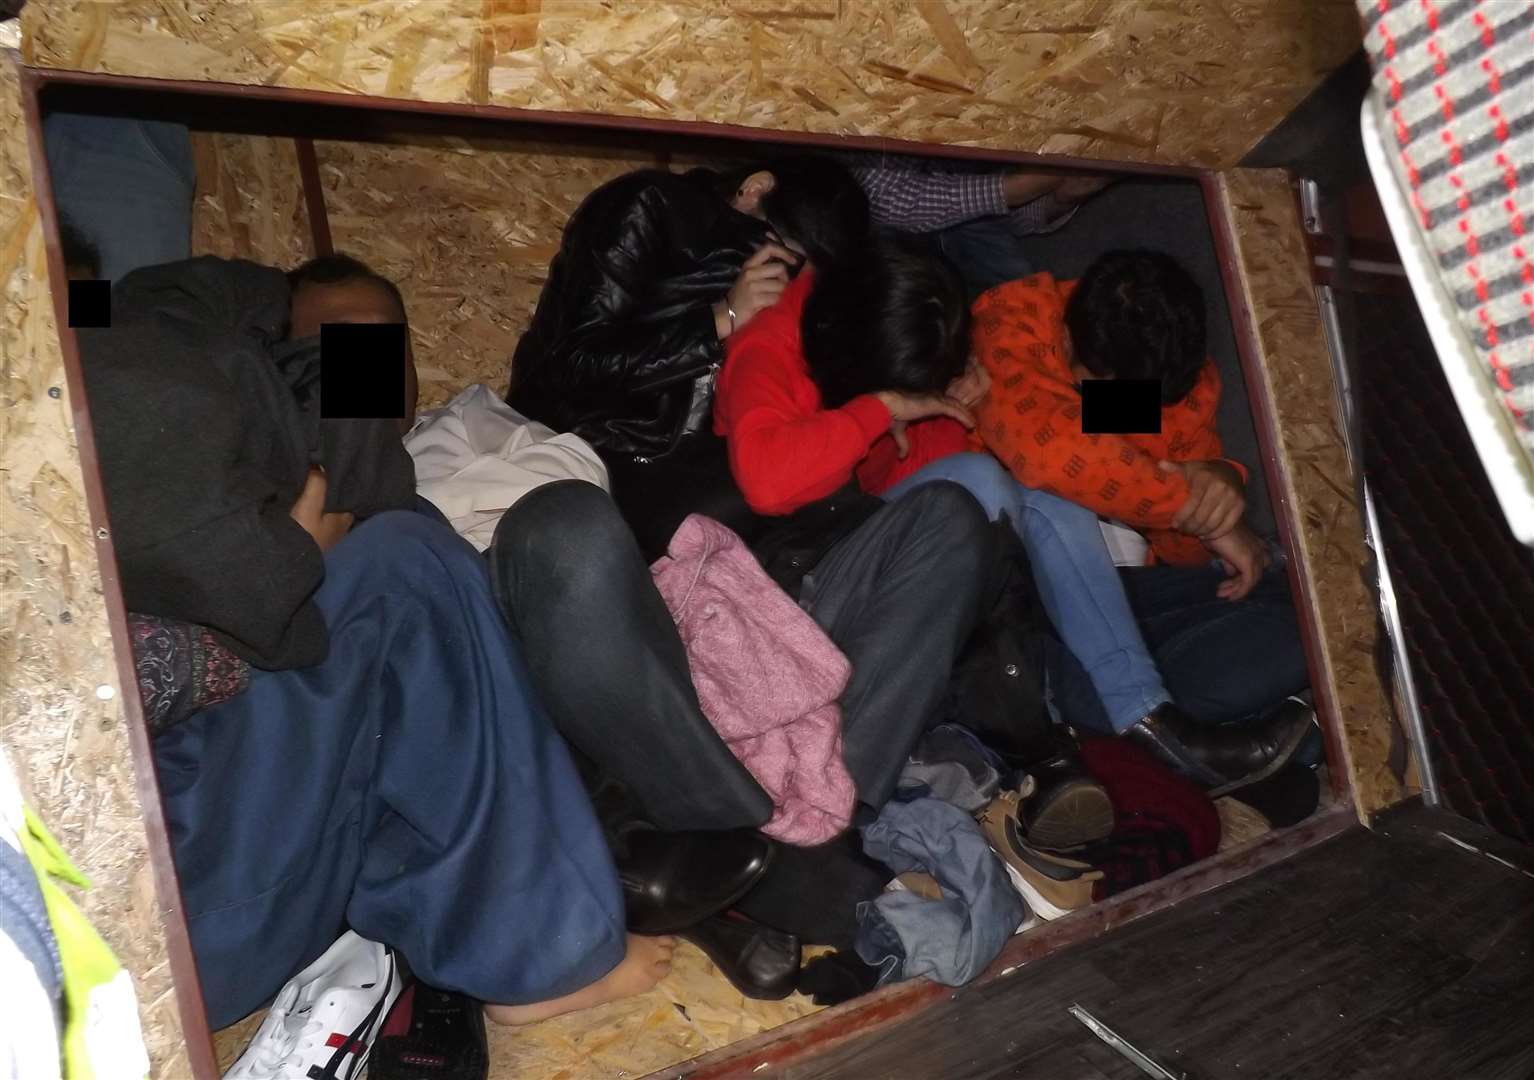 Borobeica's hide block inside the van